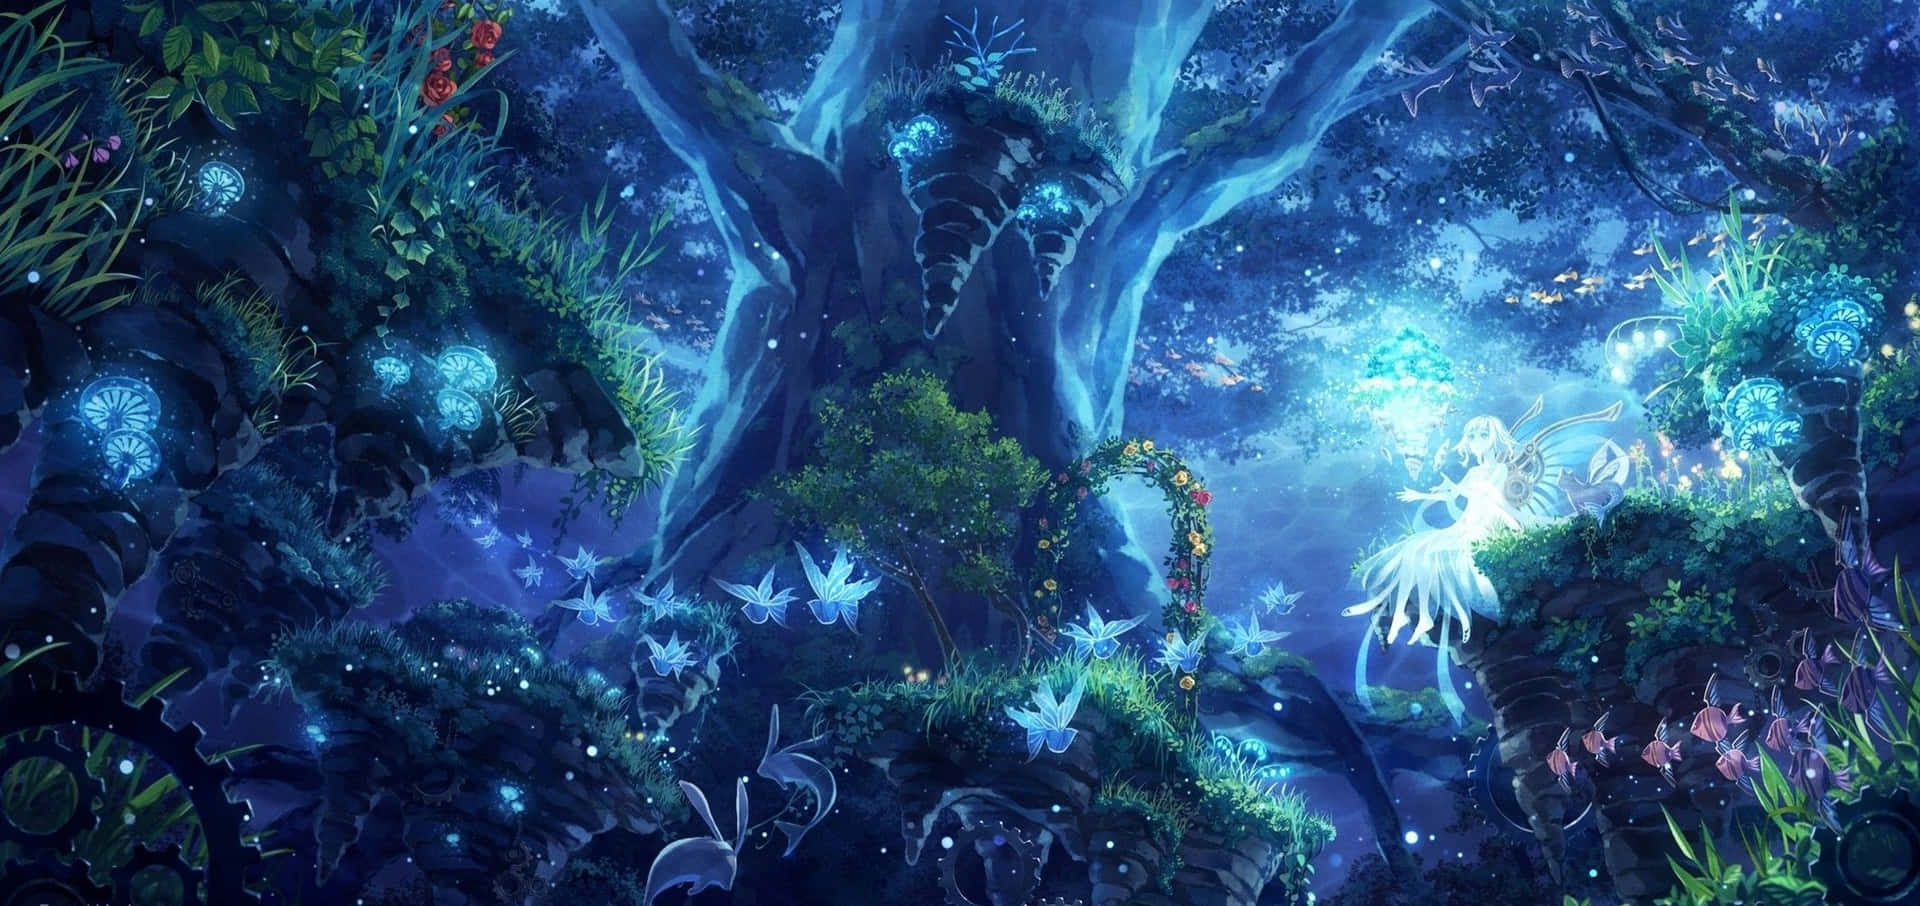 Förloradig I Den Frodiga Skönheten Av Anime-skogen. Wallpaper